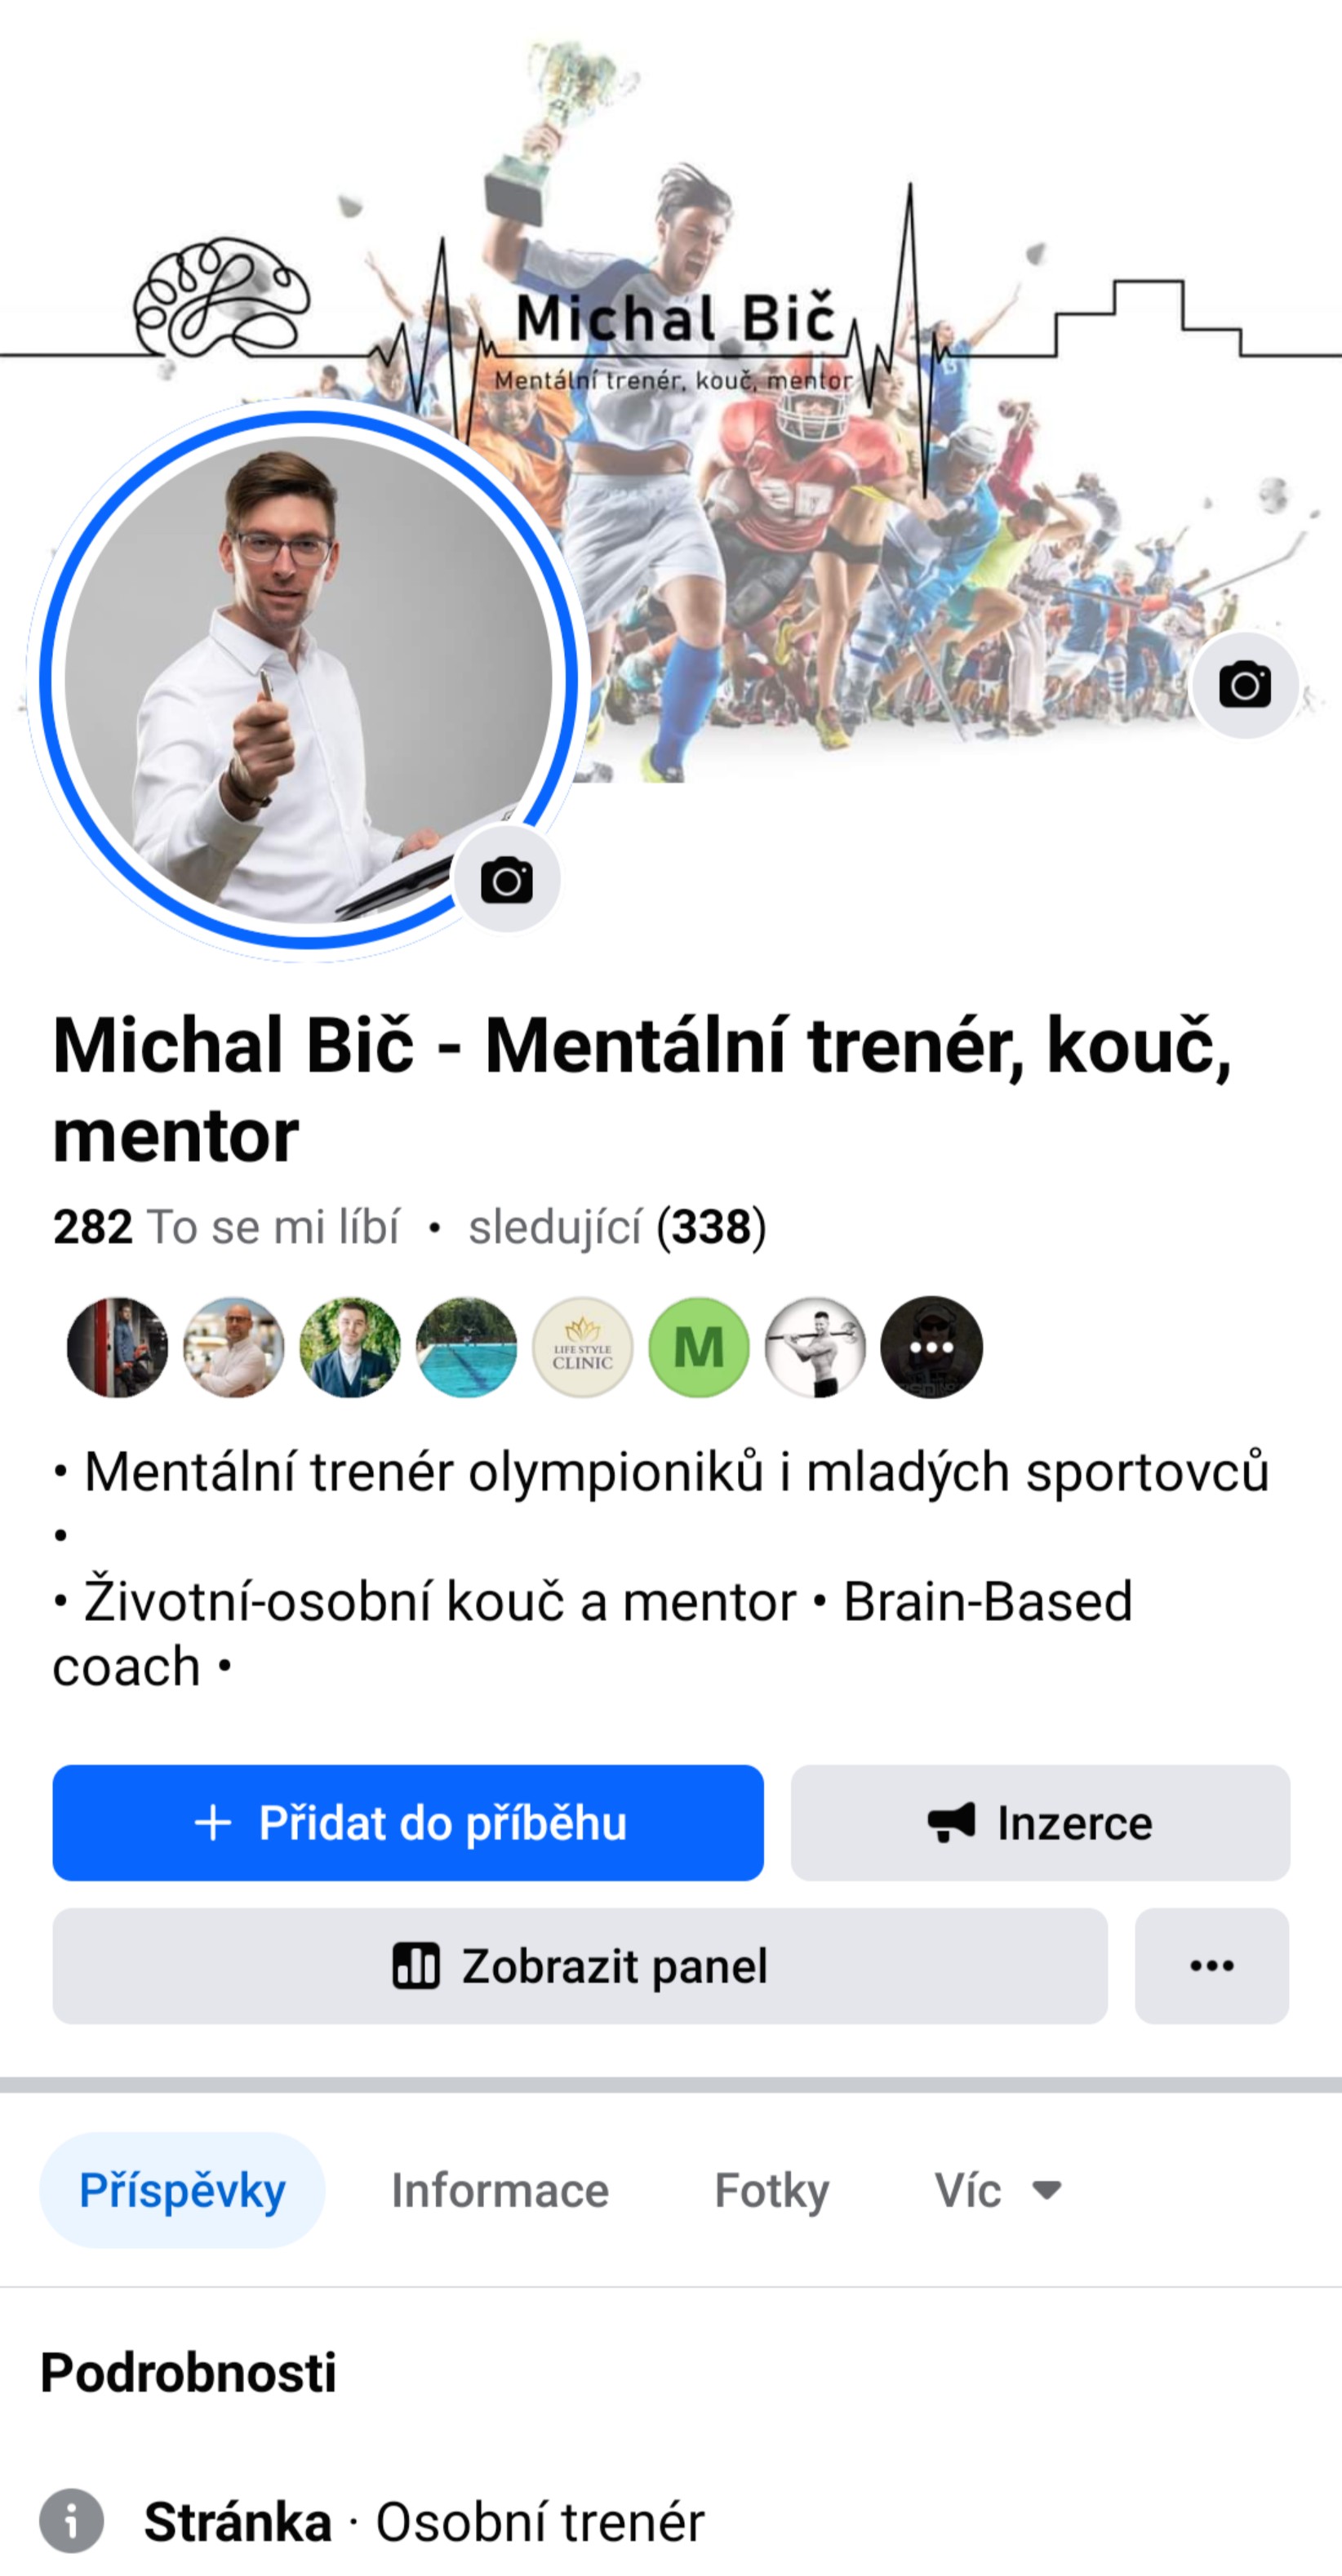 Michal Bič - Facebook